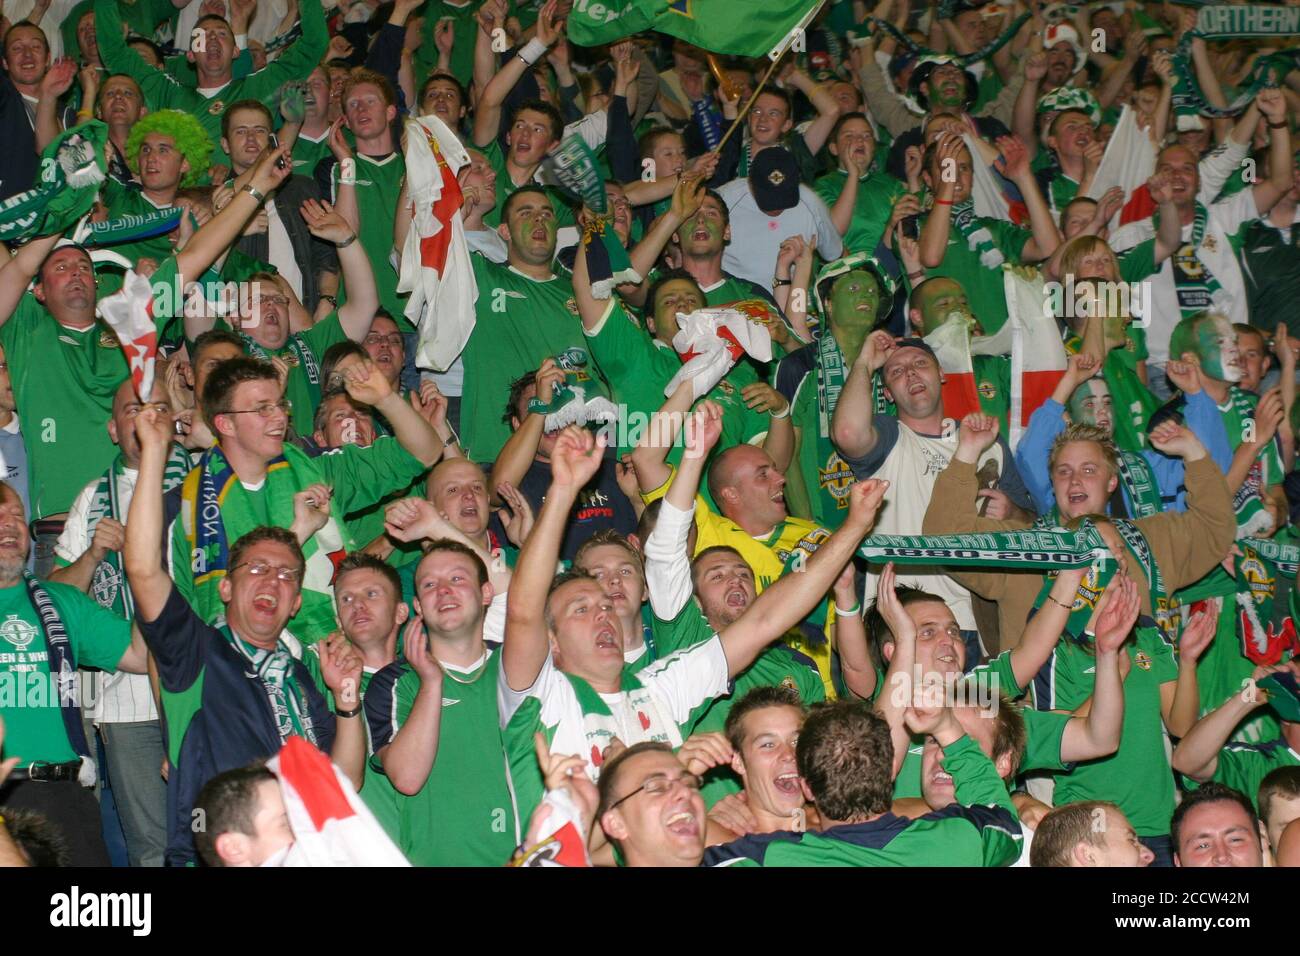 07 settembre 2005. Windsor Park, Belfast, Irlanda del Nord. Calcio internazionale – Coppa del mondo FIFA 2006 Gruppo 6 Qualifier, Irlanda del Nord 1 Inghilterra 0. I fan dell'Irlanda del Nord festeggiano una famosa vittoria alla fine della partita contro l'Inghilterra. Foto Stock